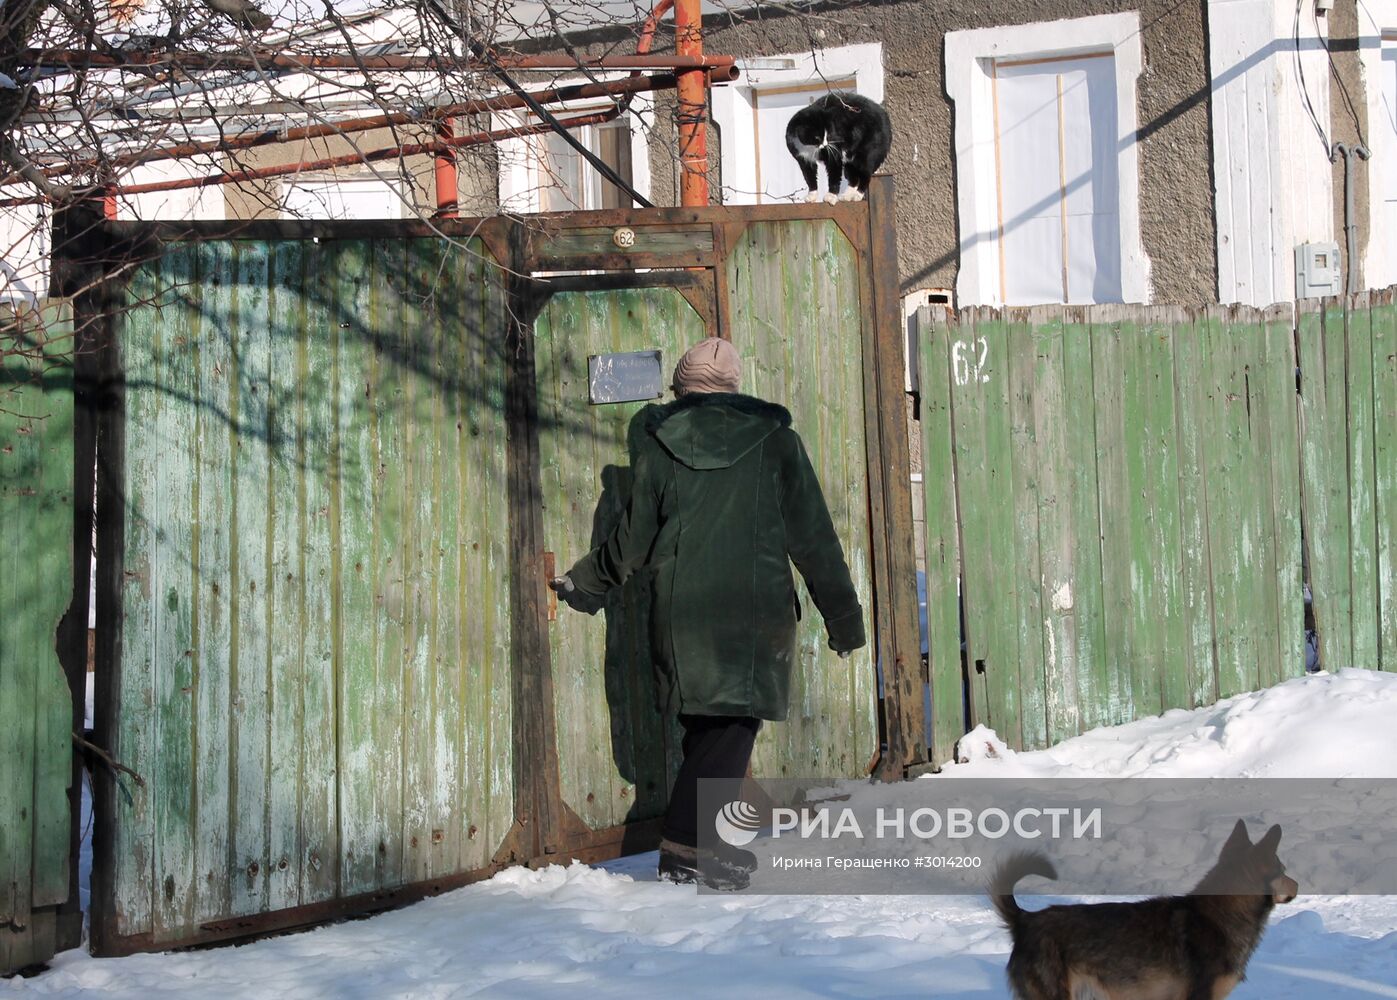 Ситуация в поселке Спартак в Донецкой области